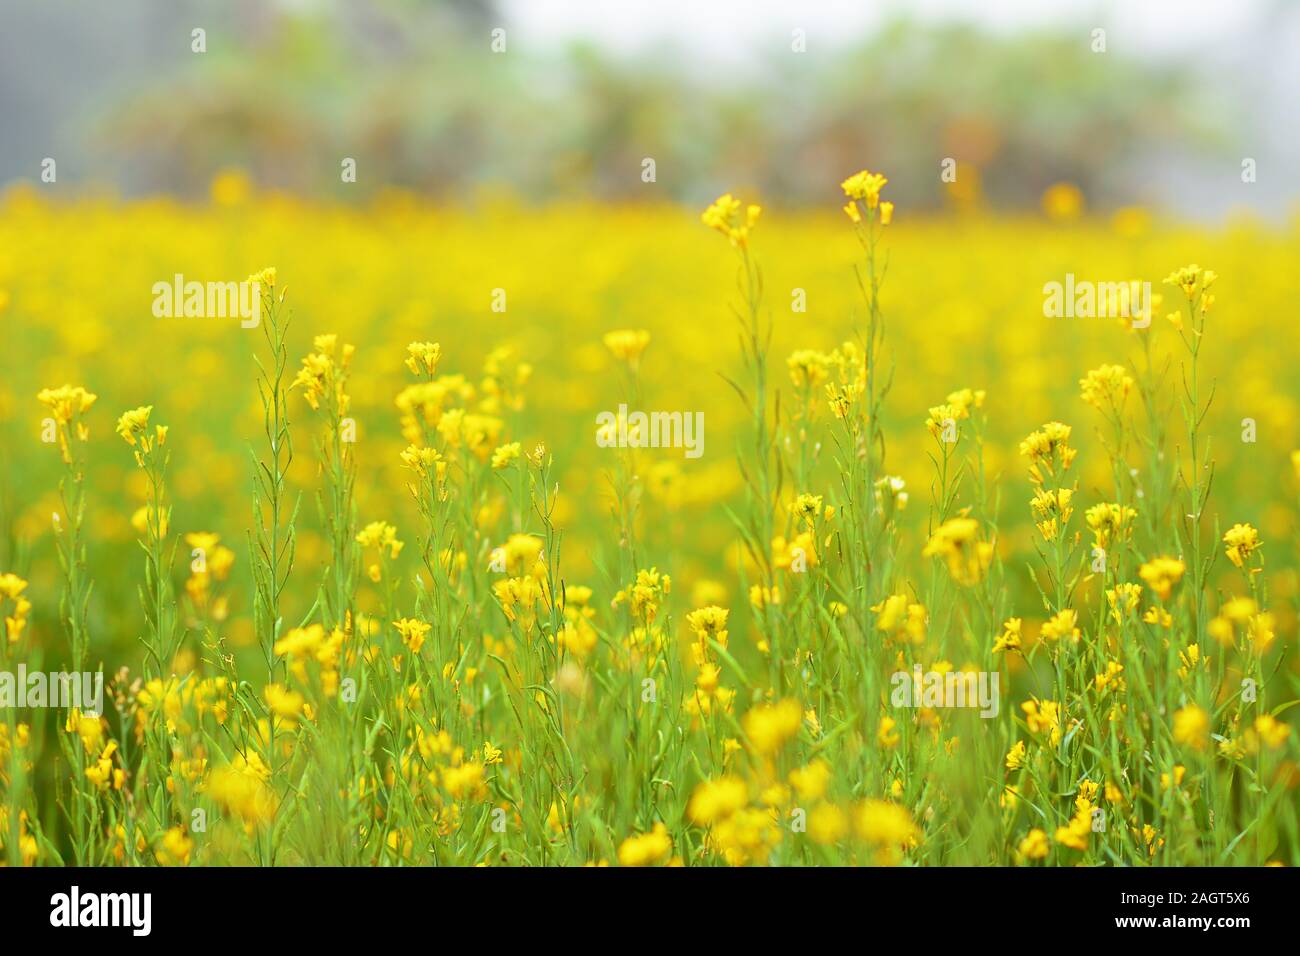 Cây cải dầu với những bông hoa vàng rực rỡ sẽ khiến màn hình điện thoại của bạn trở nên sinh động và đầy màu sắc. Đây là một lựa chọn tuyệt vời cho những ai yêu thích thiên nhiên và muốn trang trí cho mình một màn hình độc đáo.